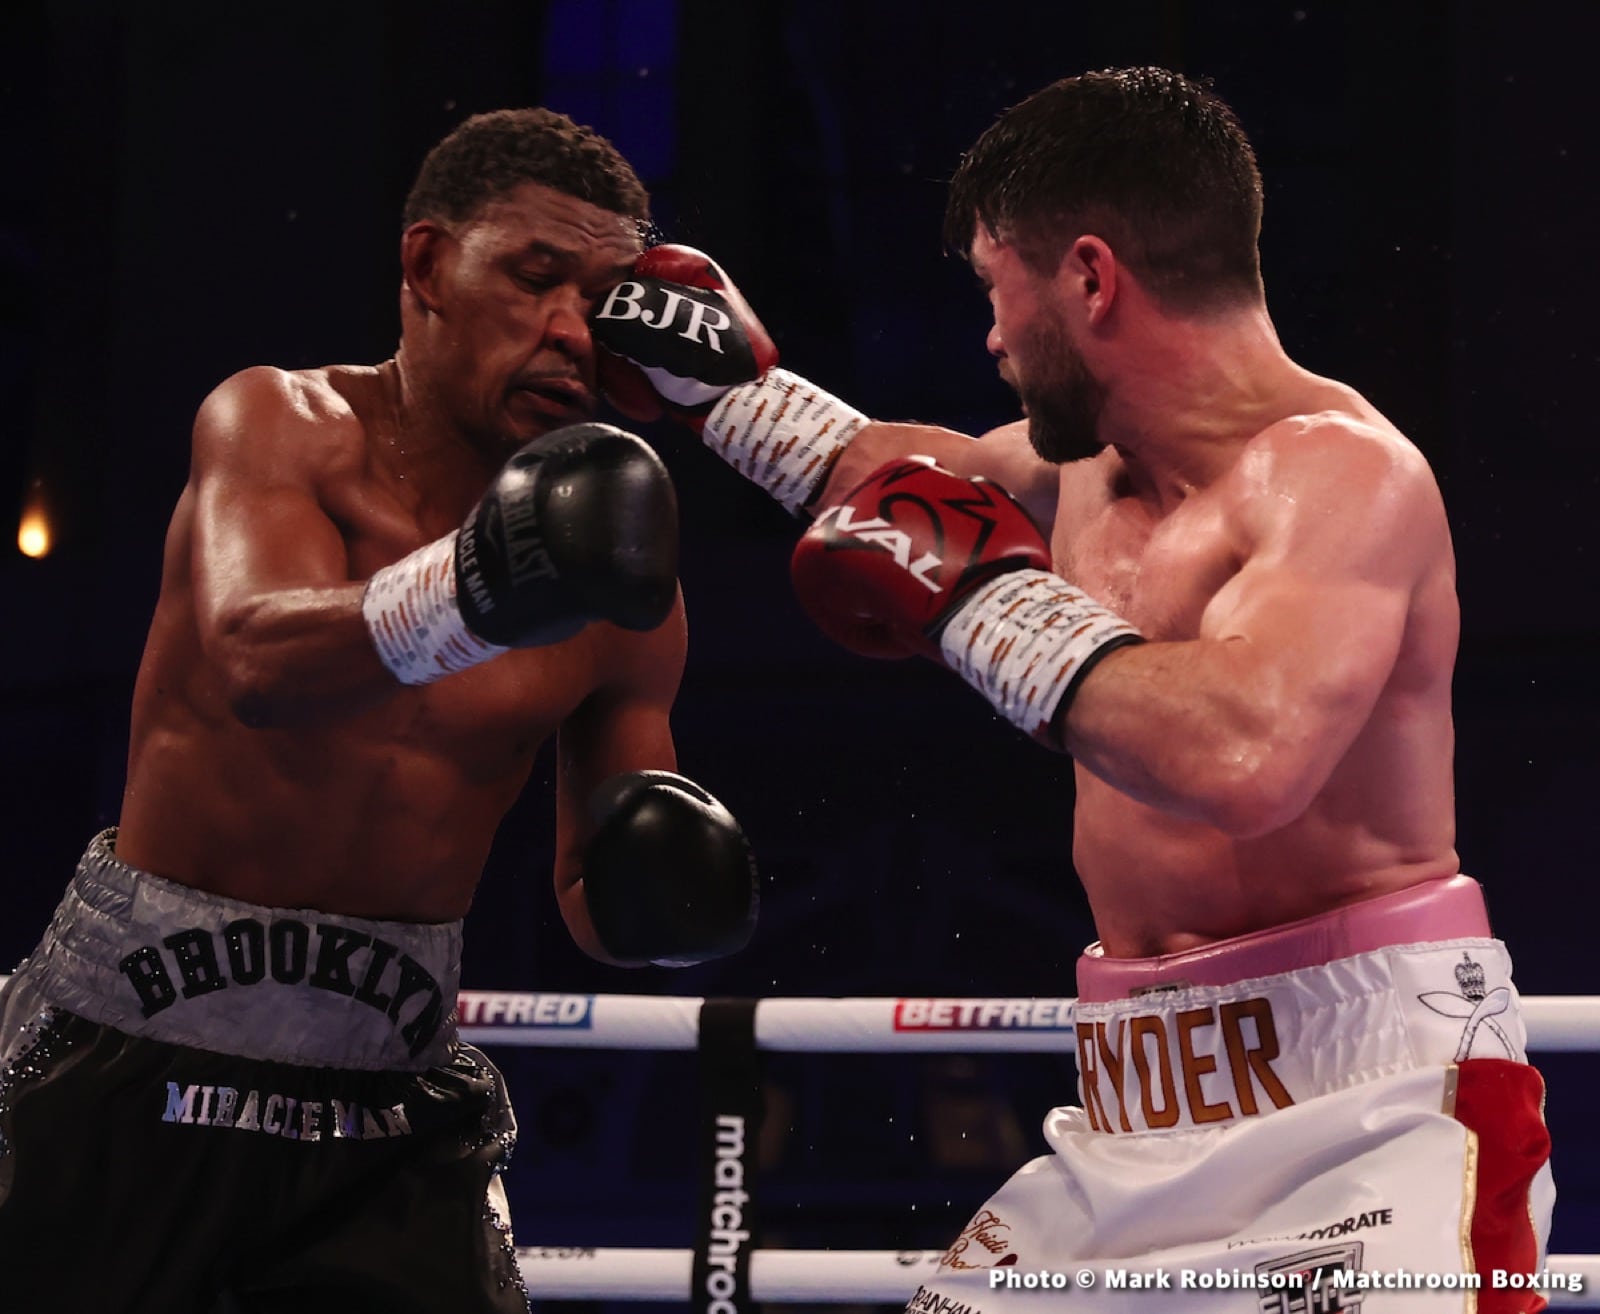 John Ryder boxing image / photo